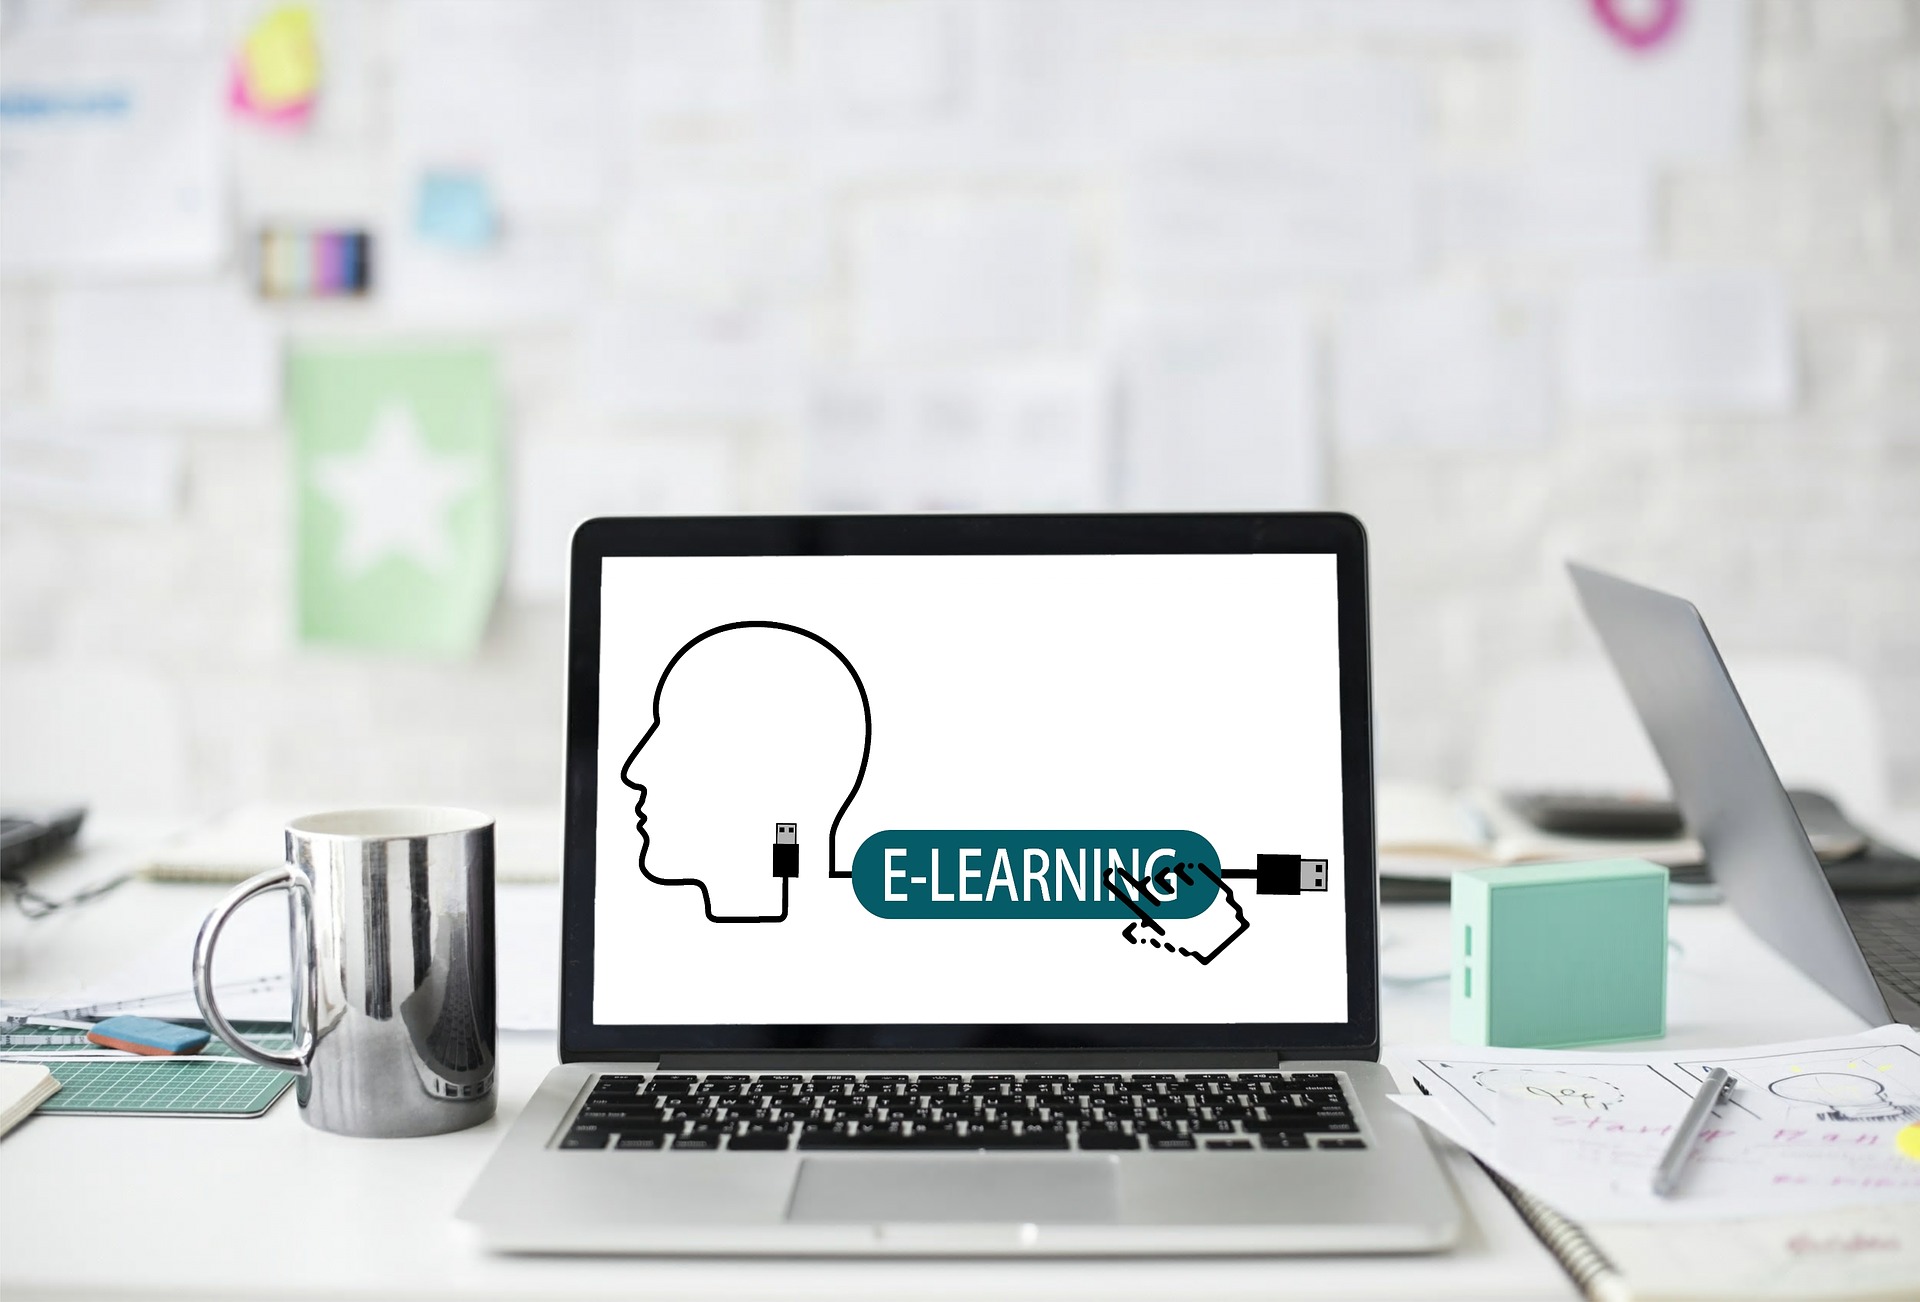 E-Learnings, Online-Forum, Video-Konferenz | Eine Einführung für AnfängerInnen in die geheimnisvolle Welt des digitalen Lernens (0108-0821I)